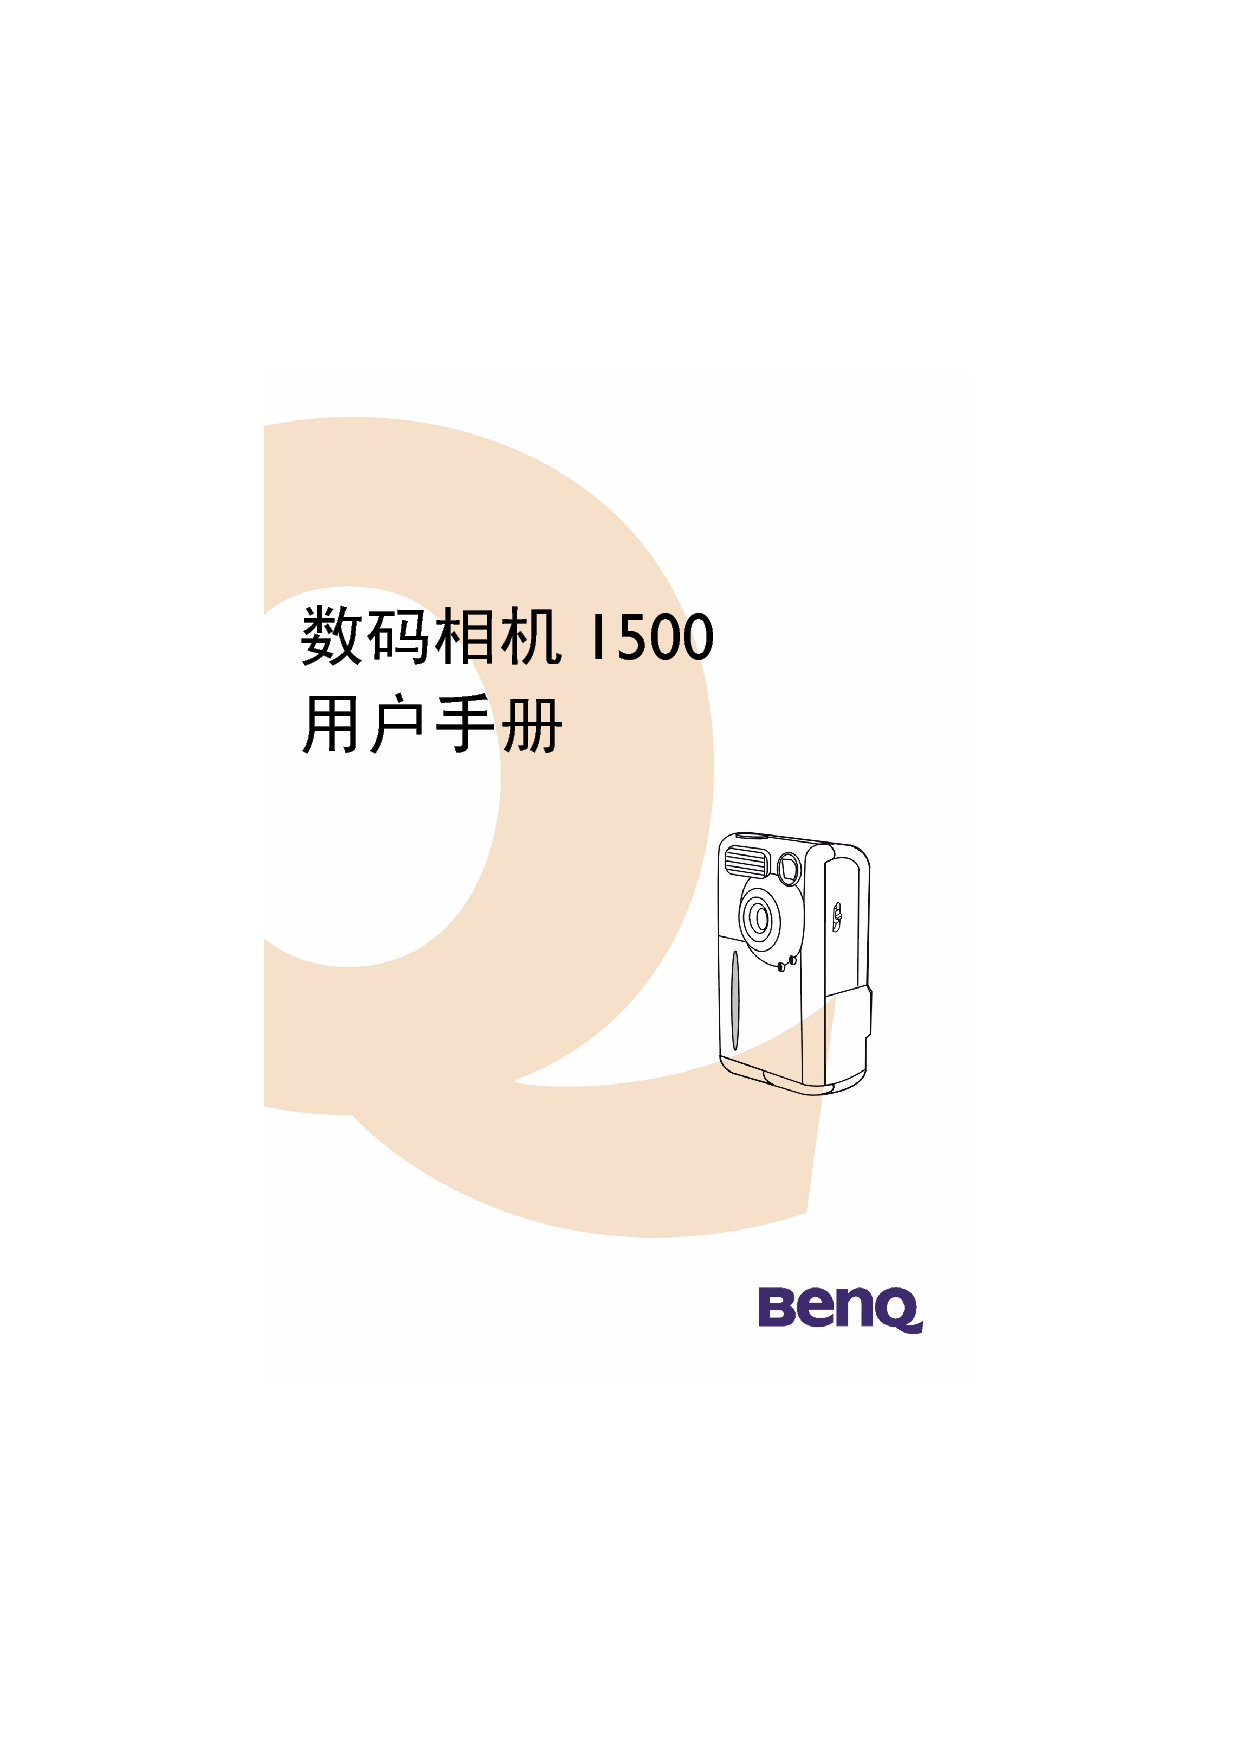 明基 Benq DC1500 使用手册 封面